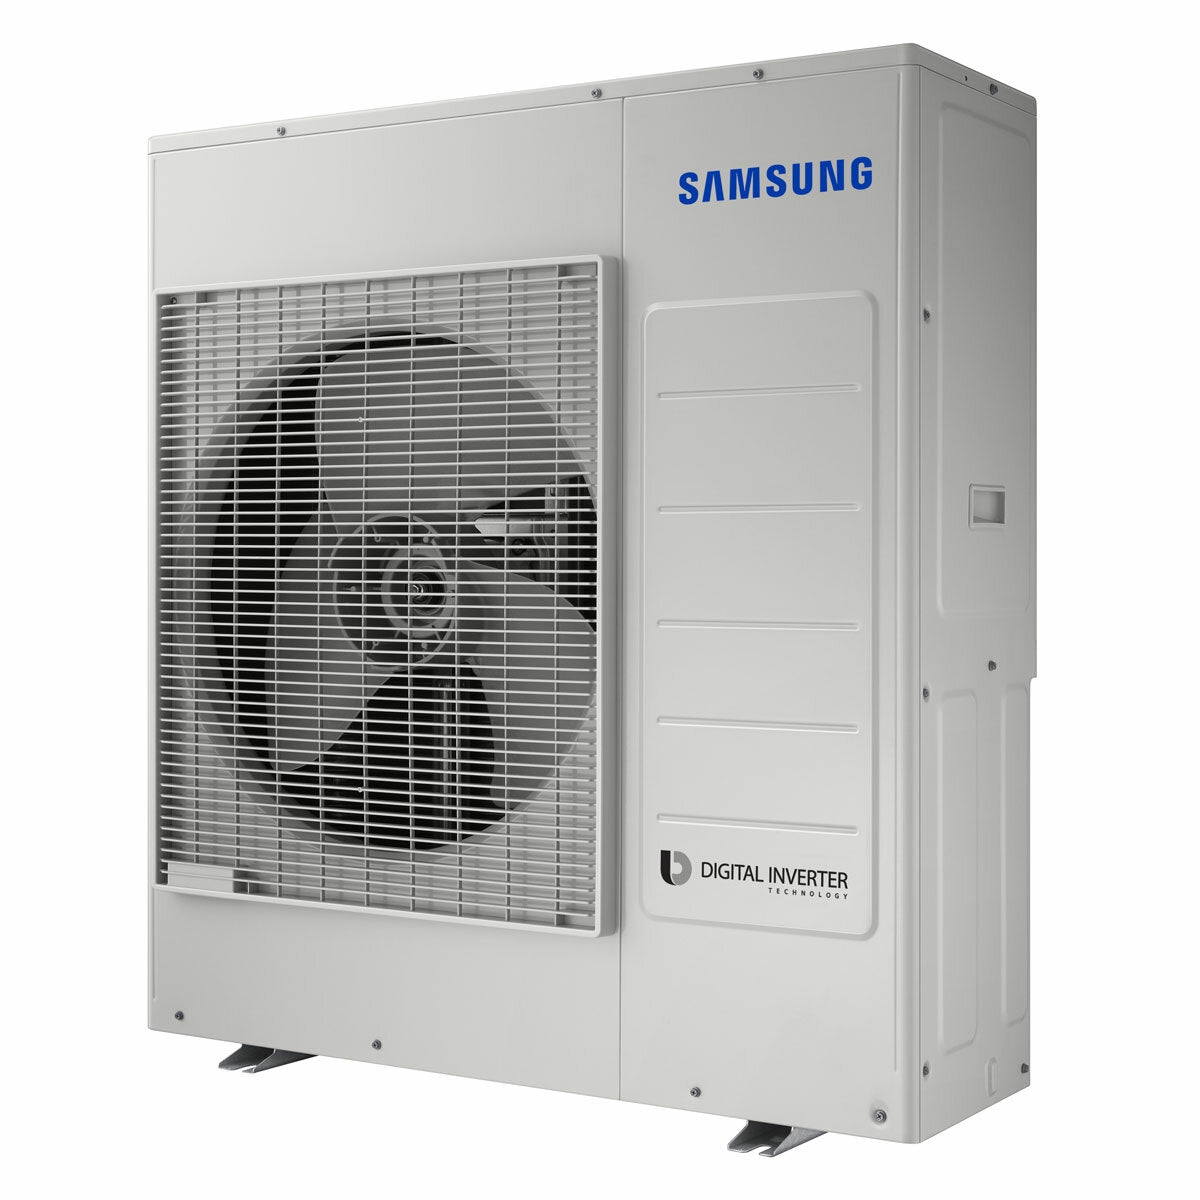 Samsung Cebu WLAN Klimaanlage Penta Split 7000 + 7000 + 12000 + 12000 + 12000 BTU Wechselrichter A++ WLAN Außengerät 10,0 kW